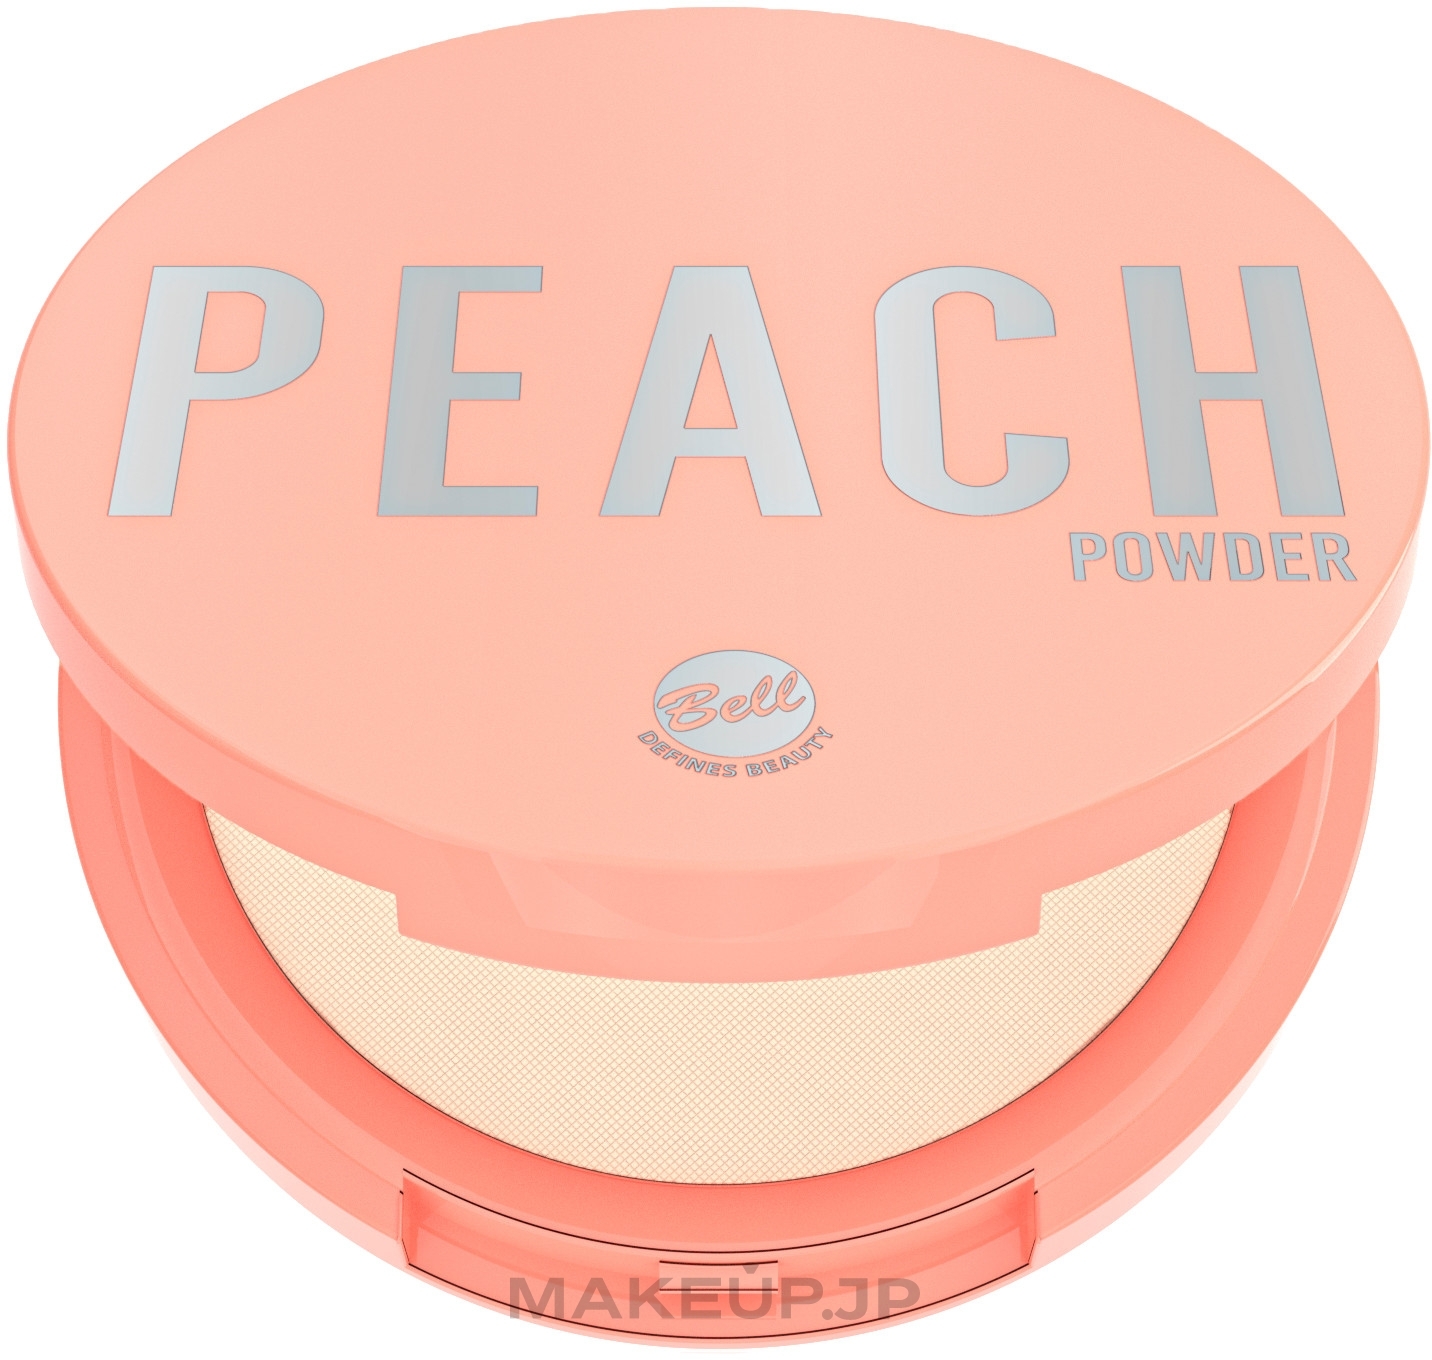 Face Powder - Bell Peach Powder — photo 10 g